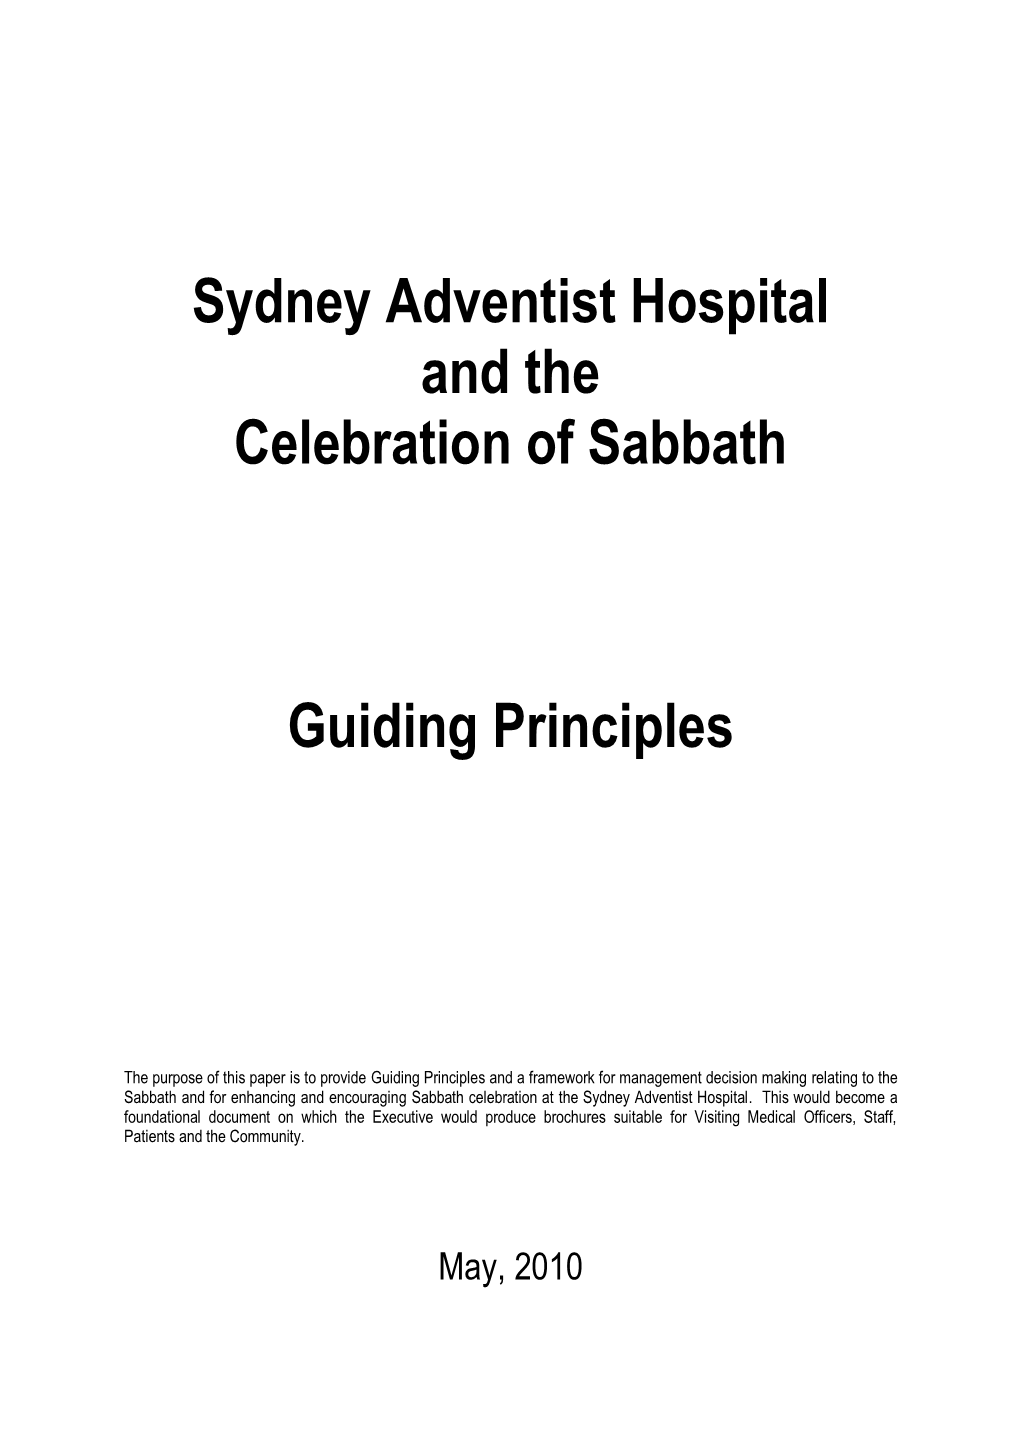 Sabbath Guidelines